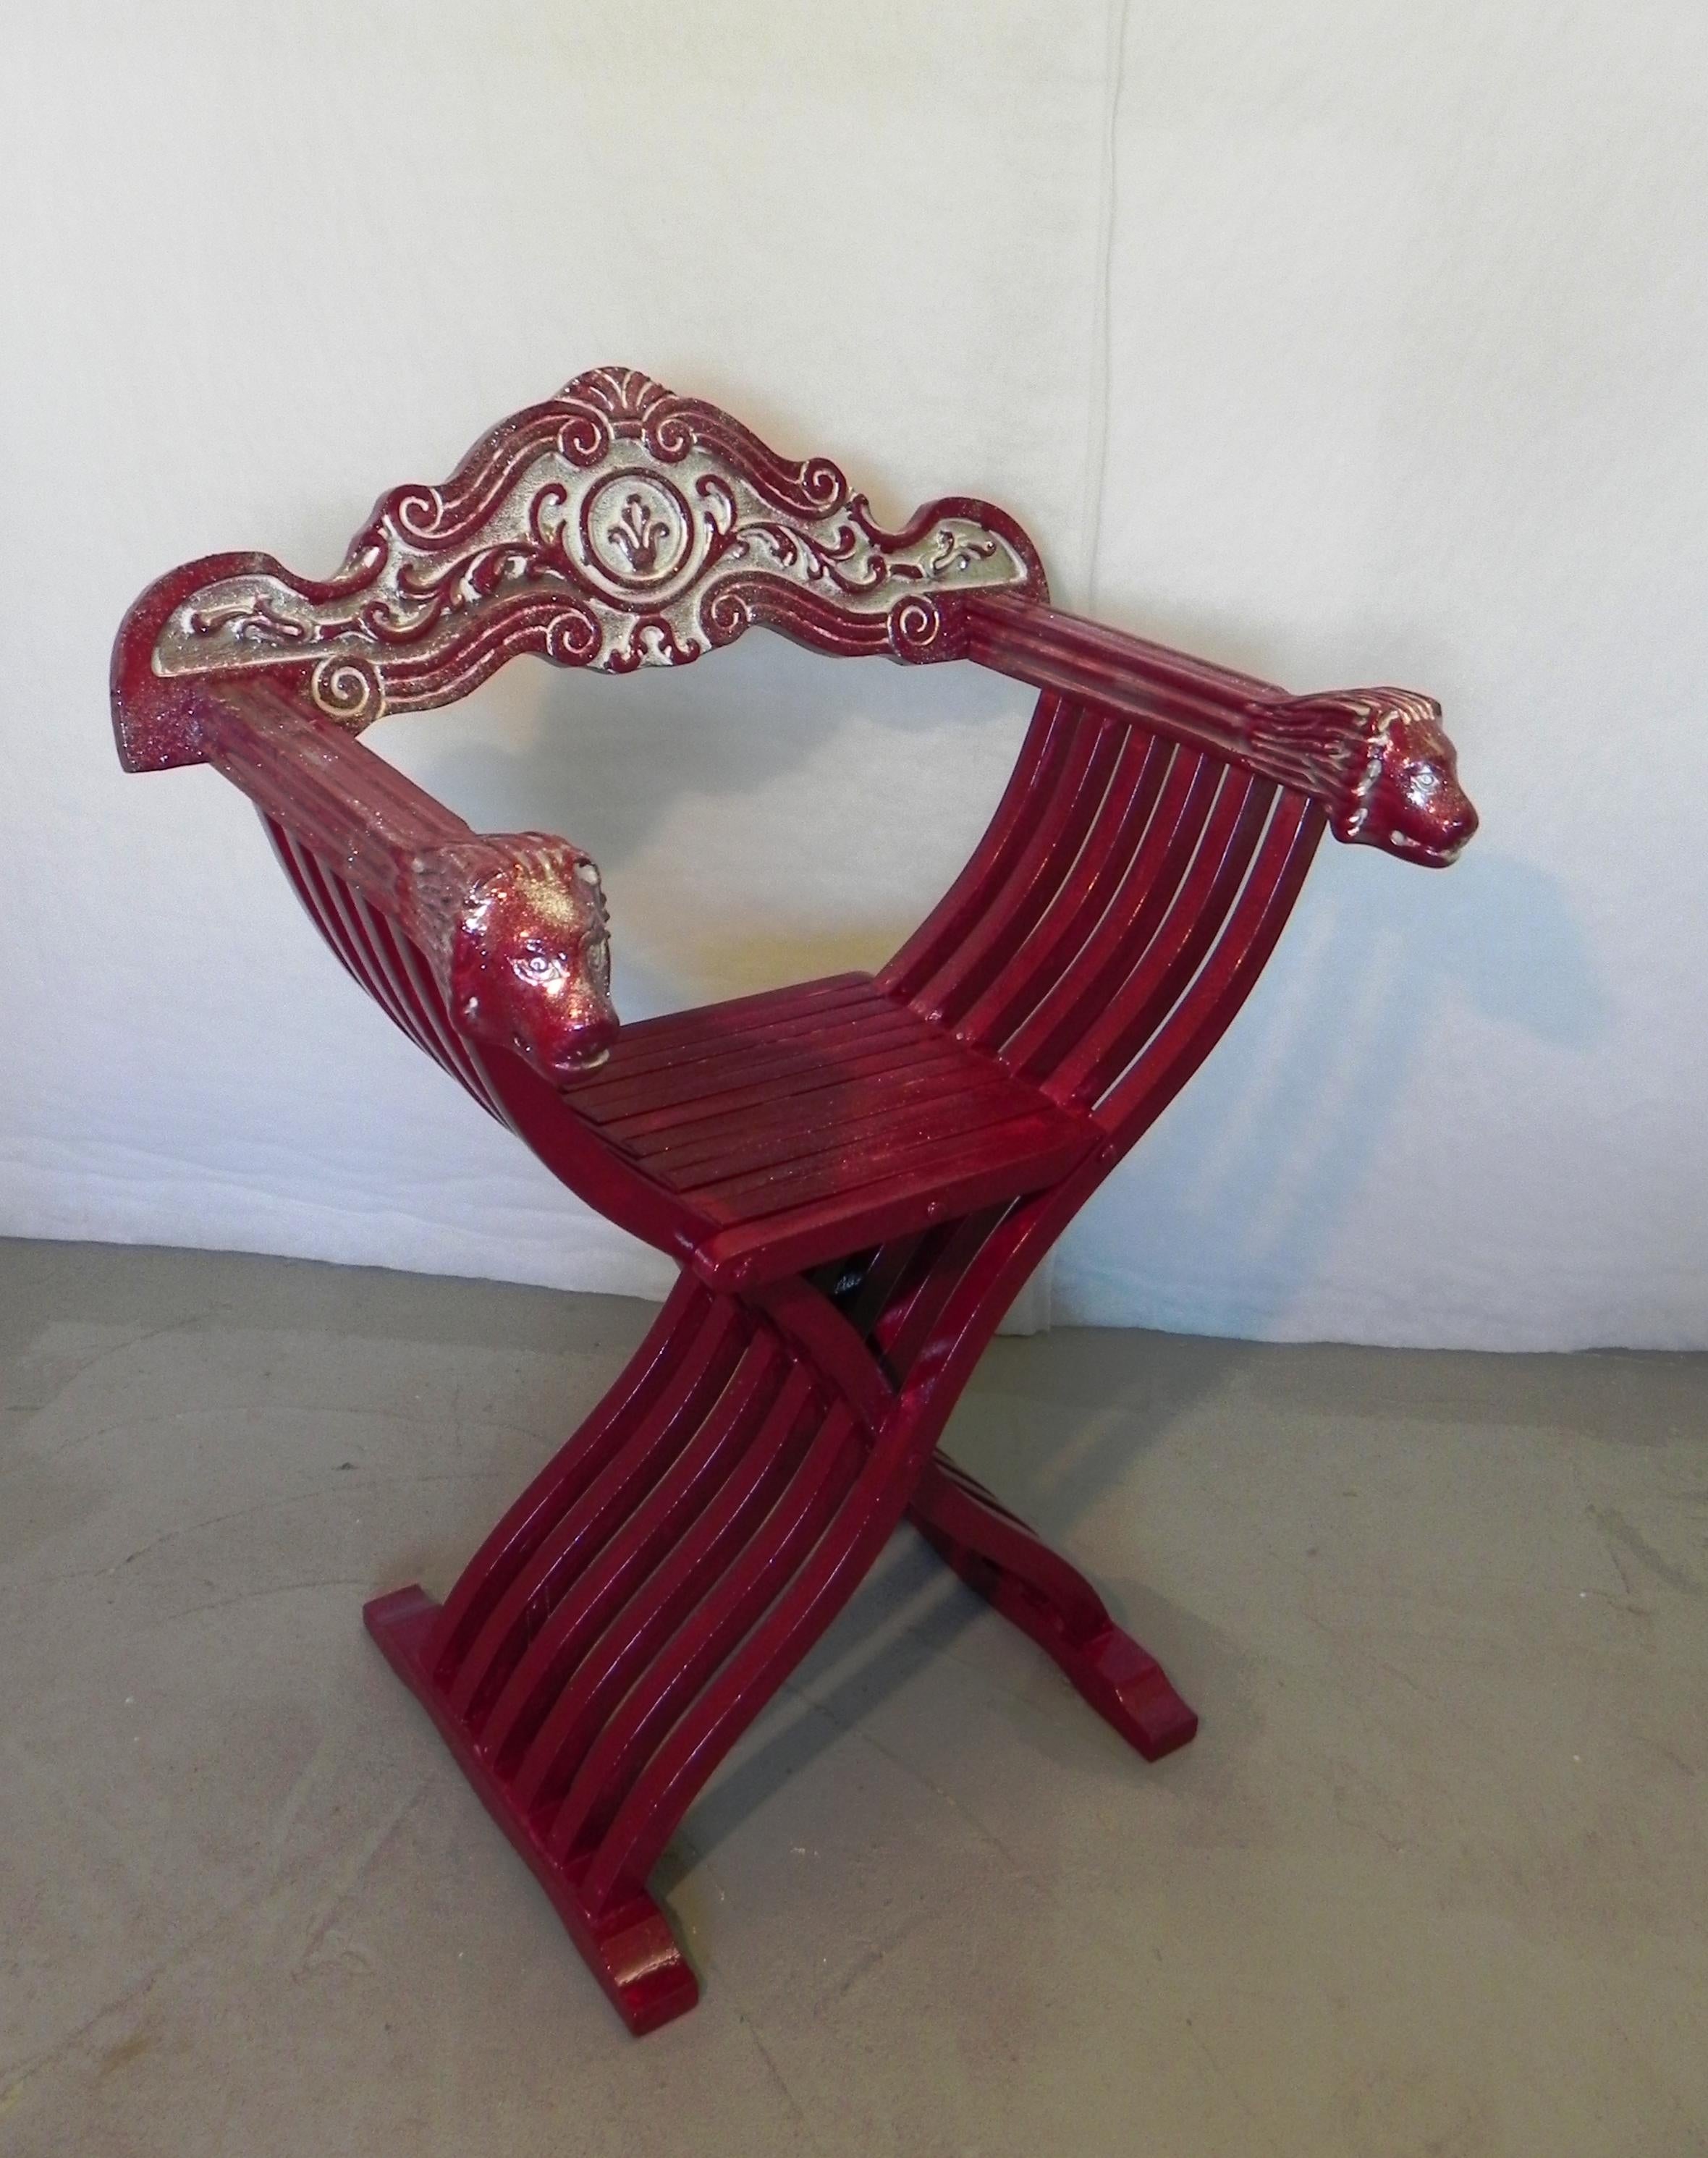 chaise Savonarola Red Throne. fabriquée dans les années 1960 dans le style renaissance. accoudoirs avec têtes de lion sculptées. dossier sculpté avec des motifs décoratifs renaissance. la chaise était à l'origine de couleur noyer, mais a été